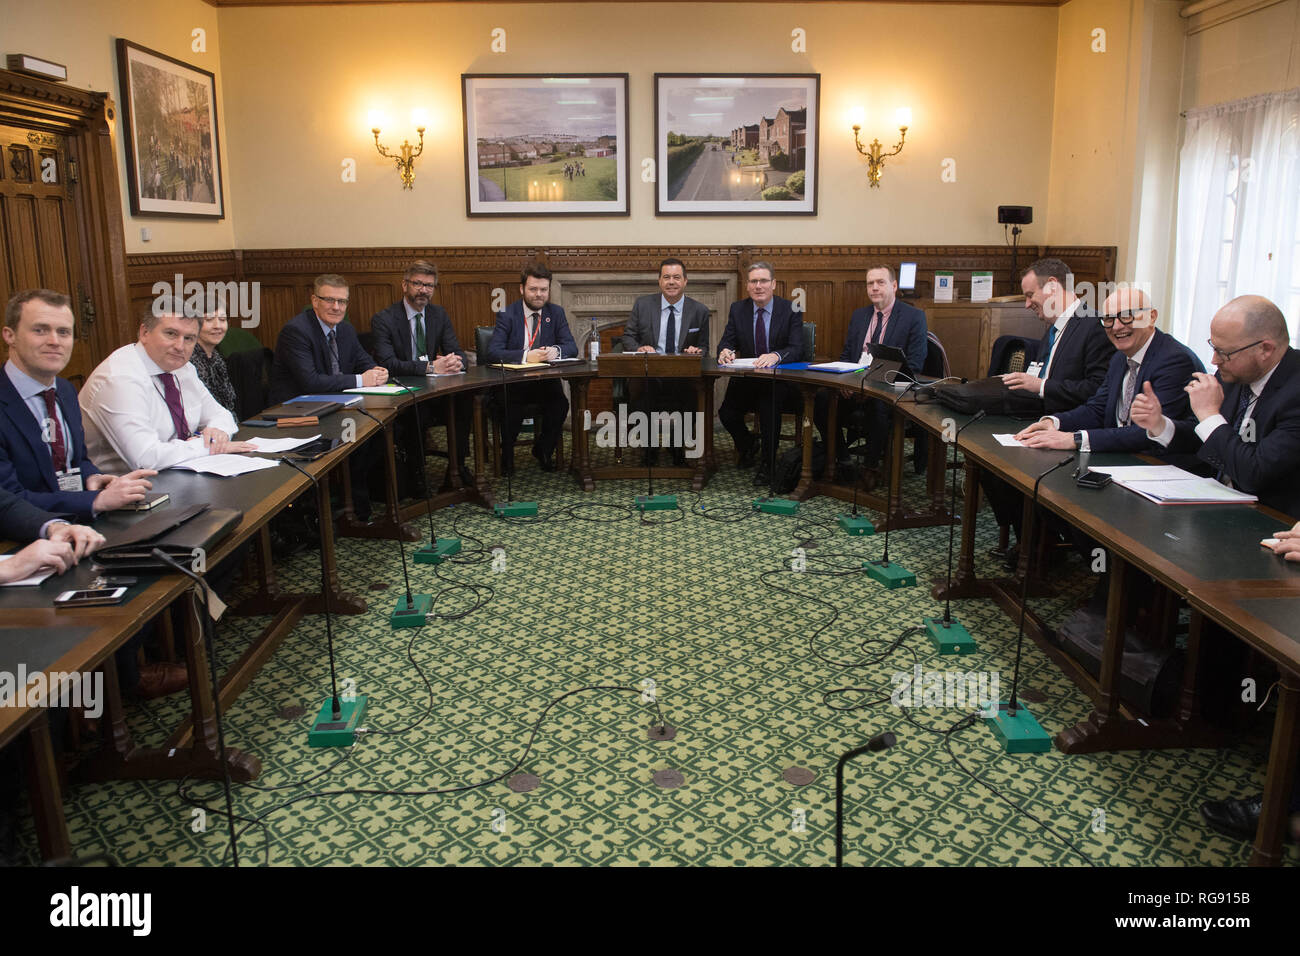 Sombra secretario Brexit Sir Keir Starmer (quinto a la derecha) se reúne representantes de Irlanda del Norte, la agricultura empresarial, sindical, comunitario y del voluntariado en la Cámara de los Comunes que presione para tratar Brexit. Foto de stock